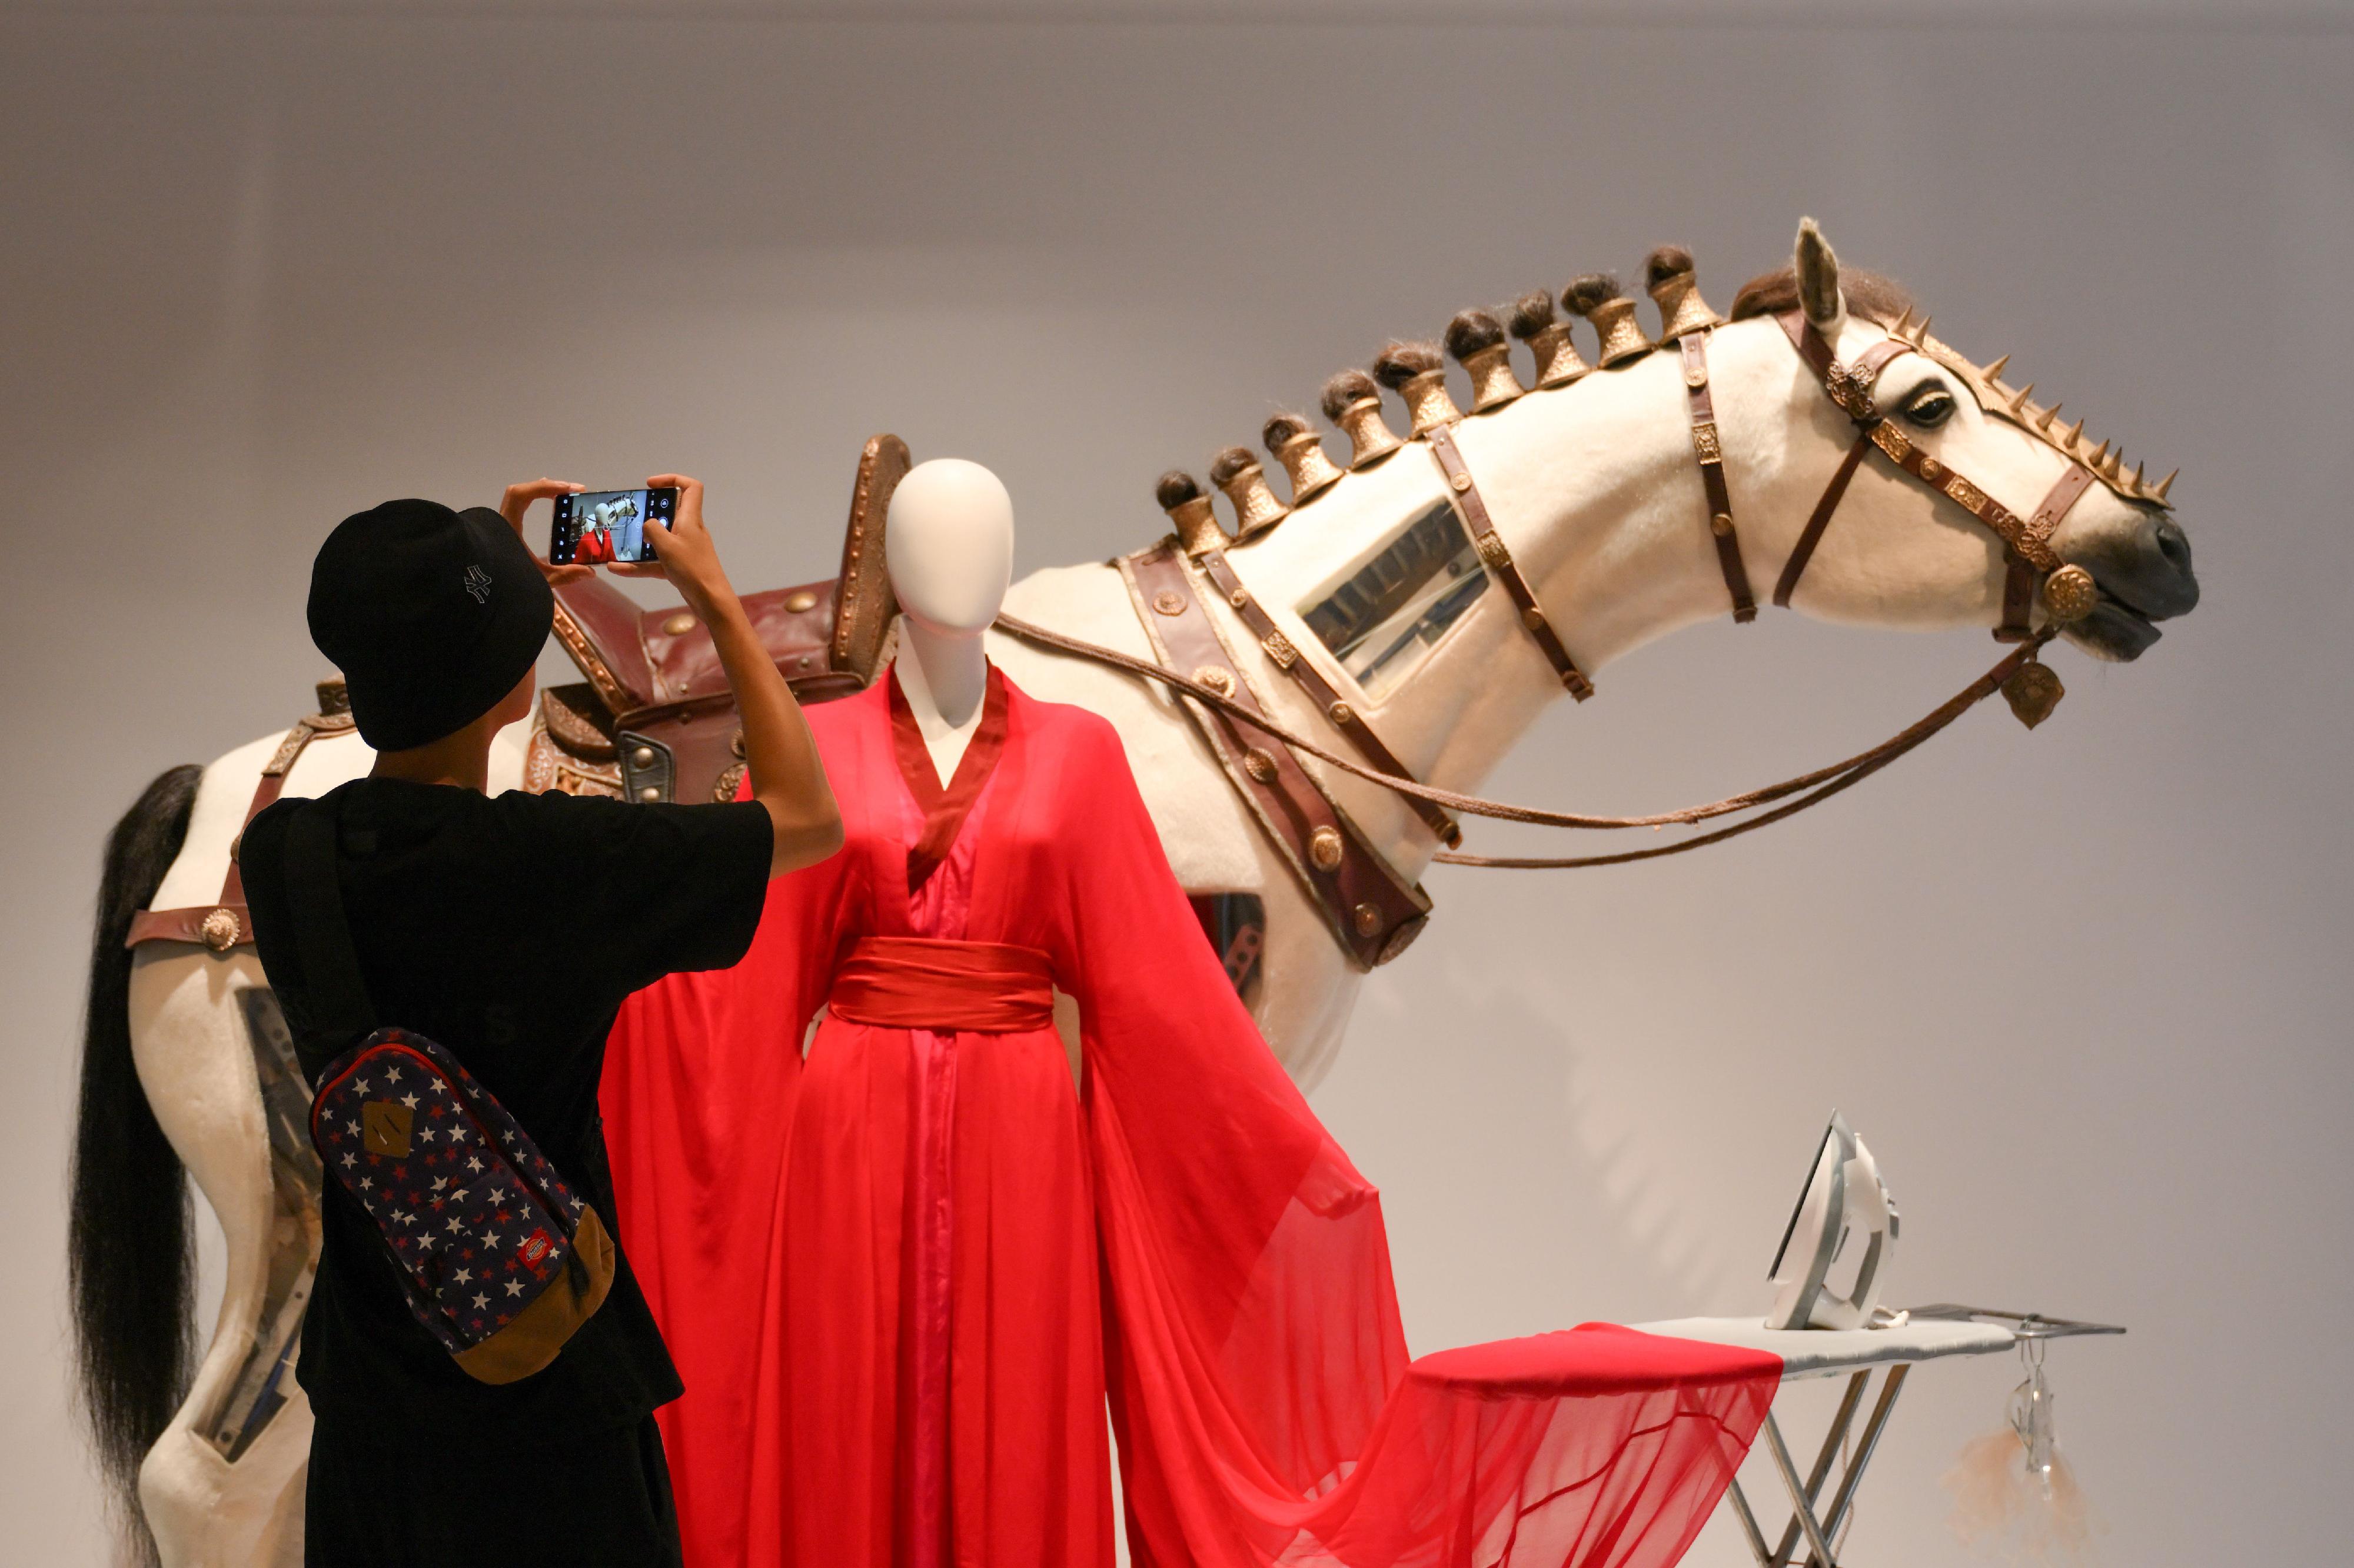 现正于香港文化博物馆举行的「无中生有——香港电影美术及服装造型展」将于九月四日 （星期一）结束，市民请把握机会在余下展期前往参观。图示参观者正观赏张曼玉于《英雄》（2002）中穿着的红色古装和《狄仁杰之神刀龙王》（2013）中的特别道具「水中马」。